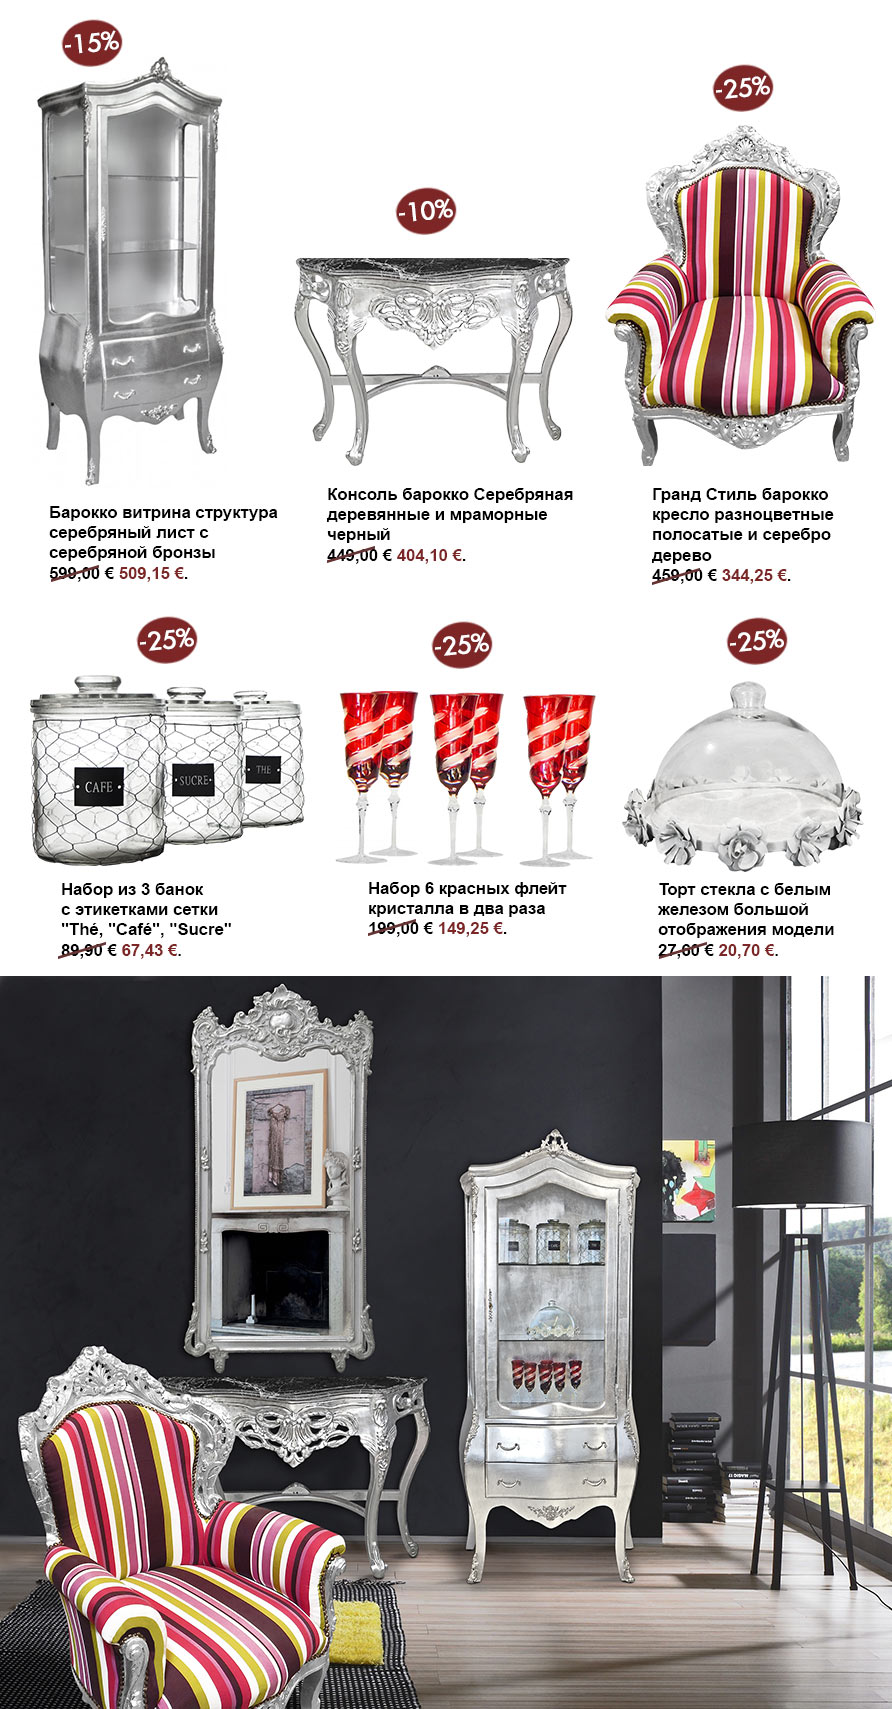 низкие цены на мебель и зеркала в стиле барокко